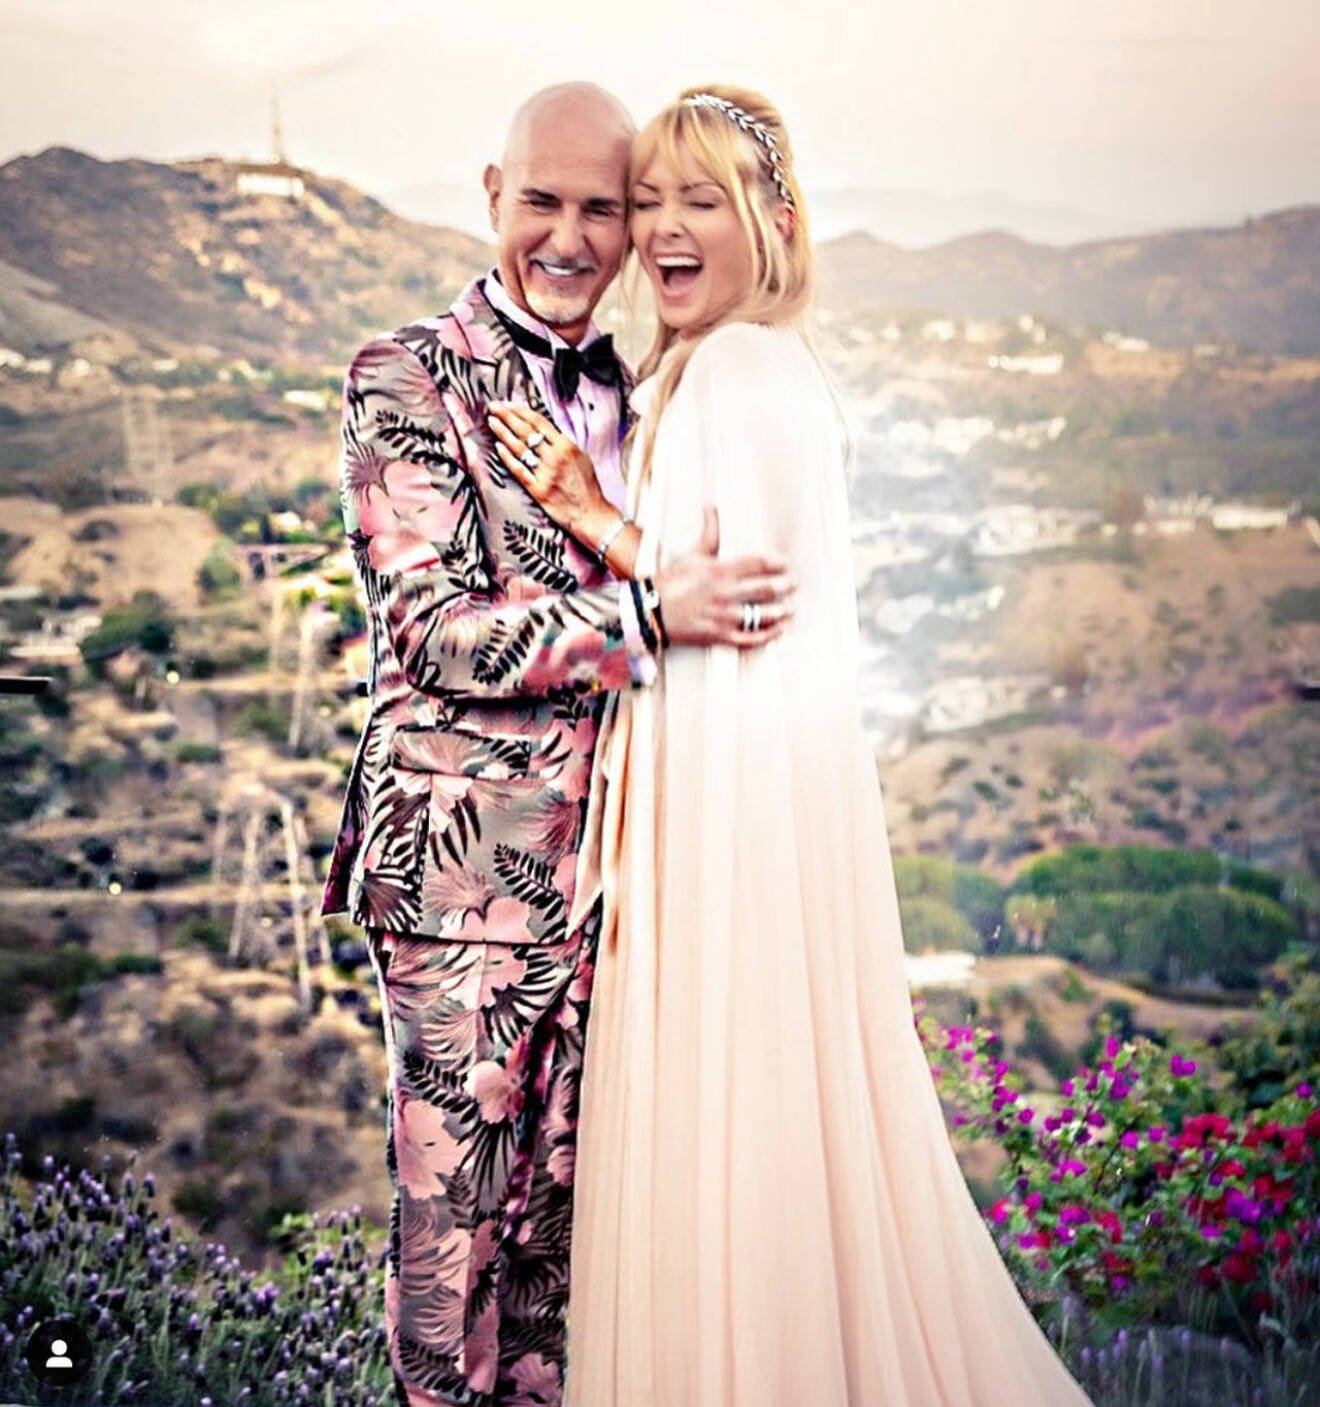 Bruden Izabella Scorupco med vännen Micael Bindefeld efter vigseln i Hollywood Hills.